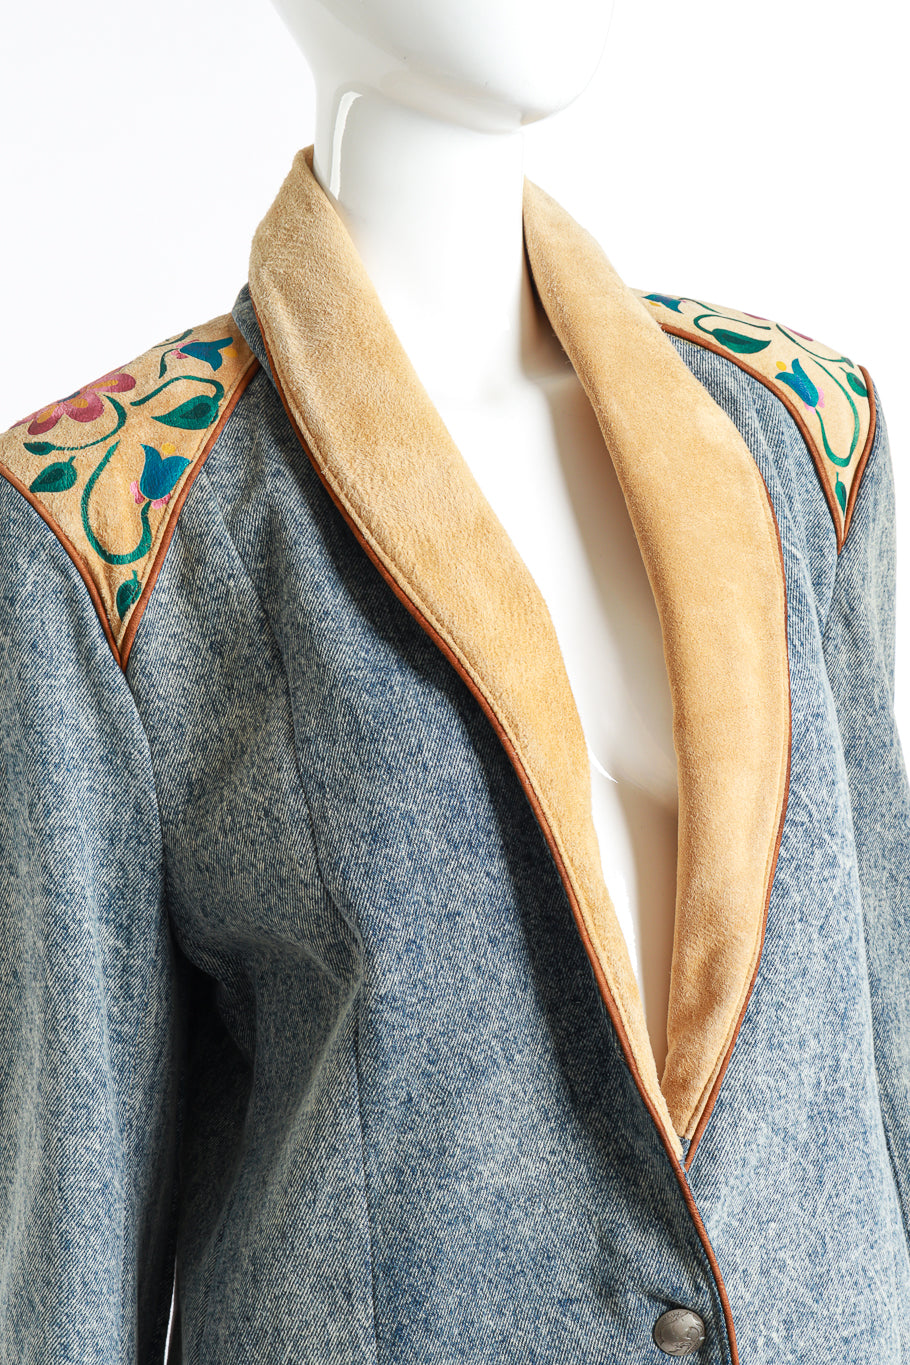 Vintage Char Floral Painted Denim & Suede Jacket front on mannequin closeup @recess la